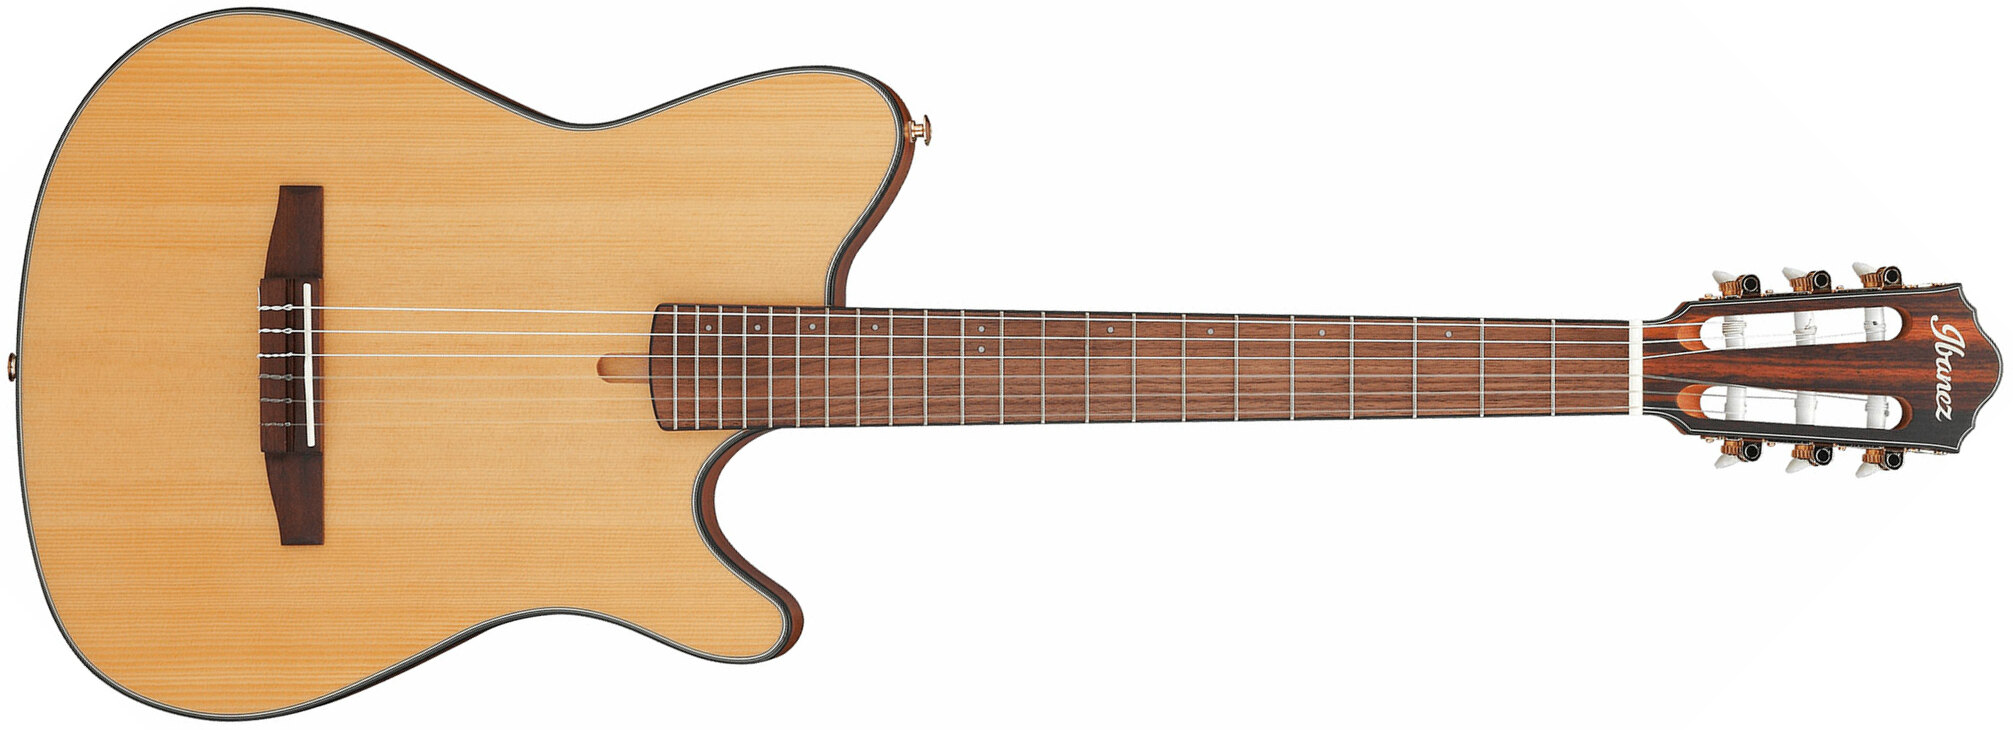 Ibanez Frh10n Ntf Hybrid Cw Epicea Sapele Wal - Natural Flat - Klassieke gitaar 4/4 - Main picture